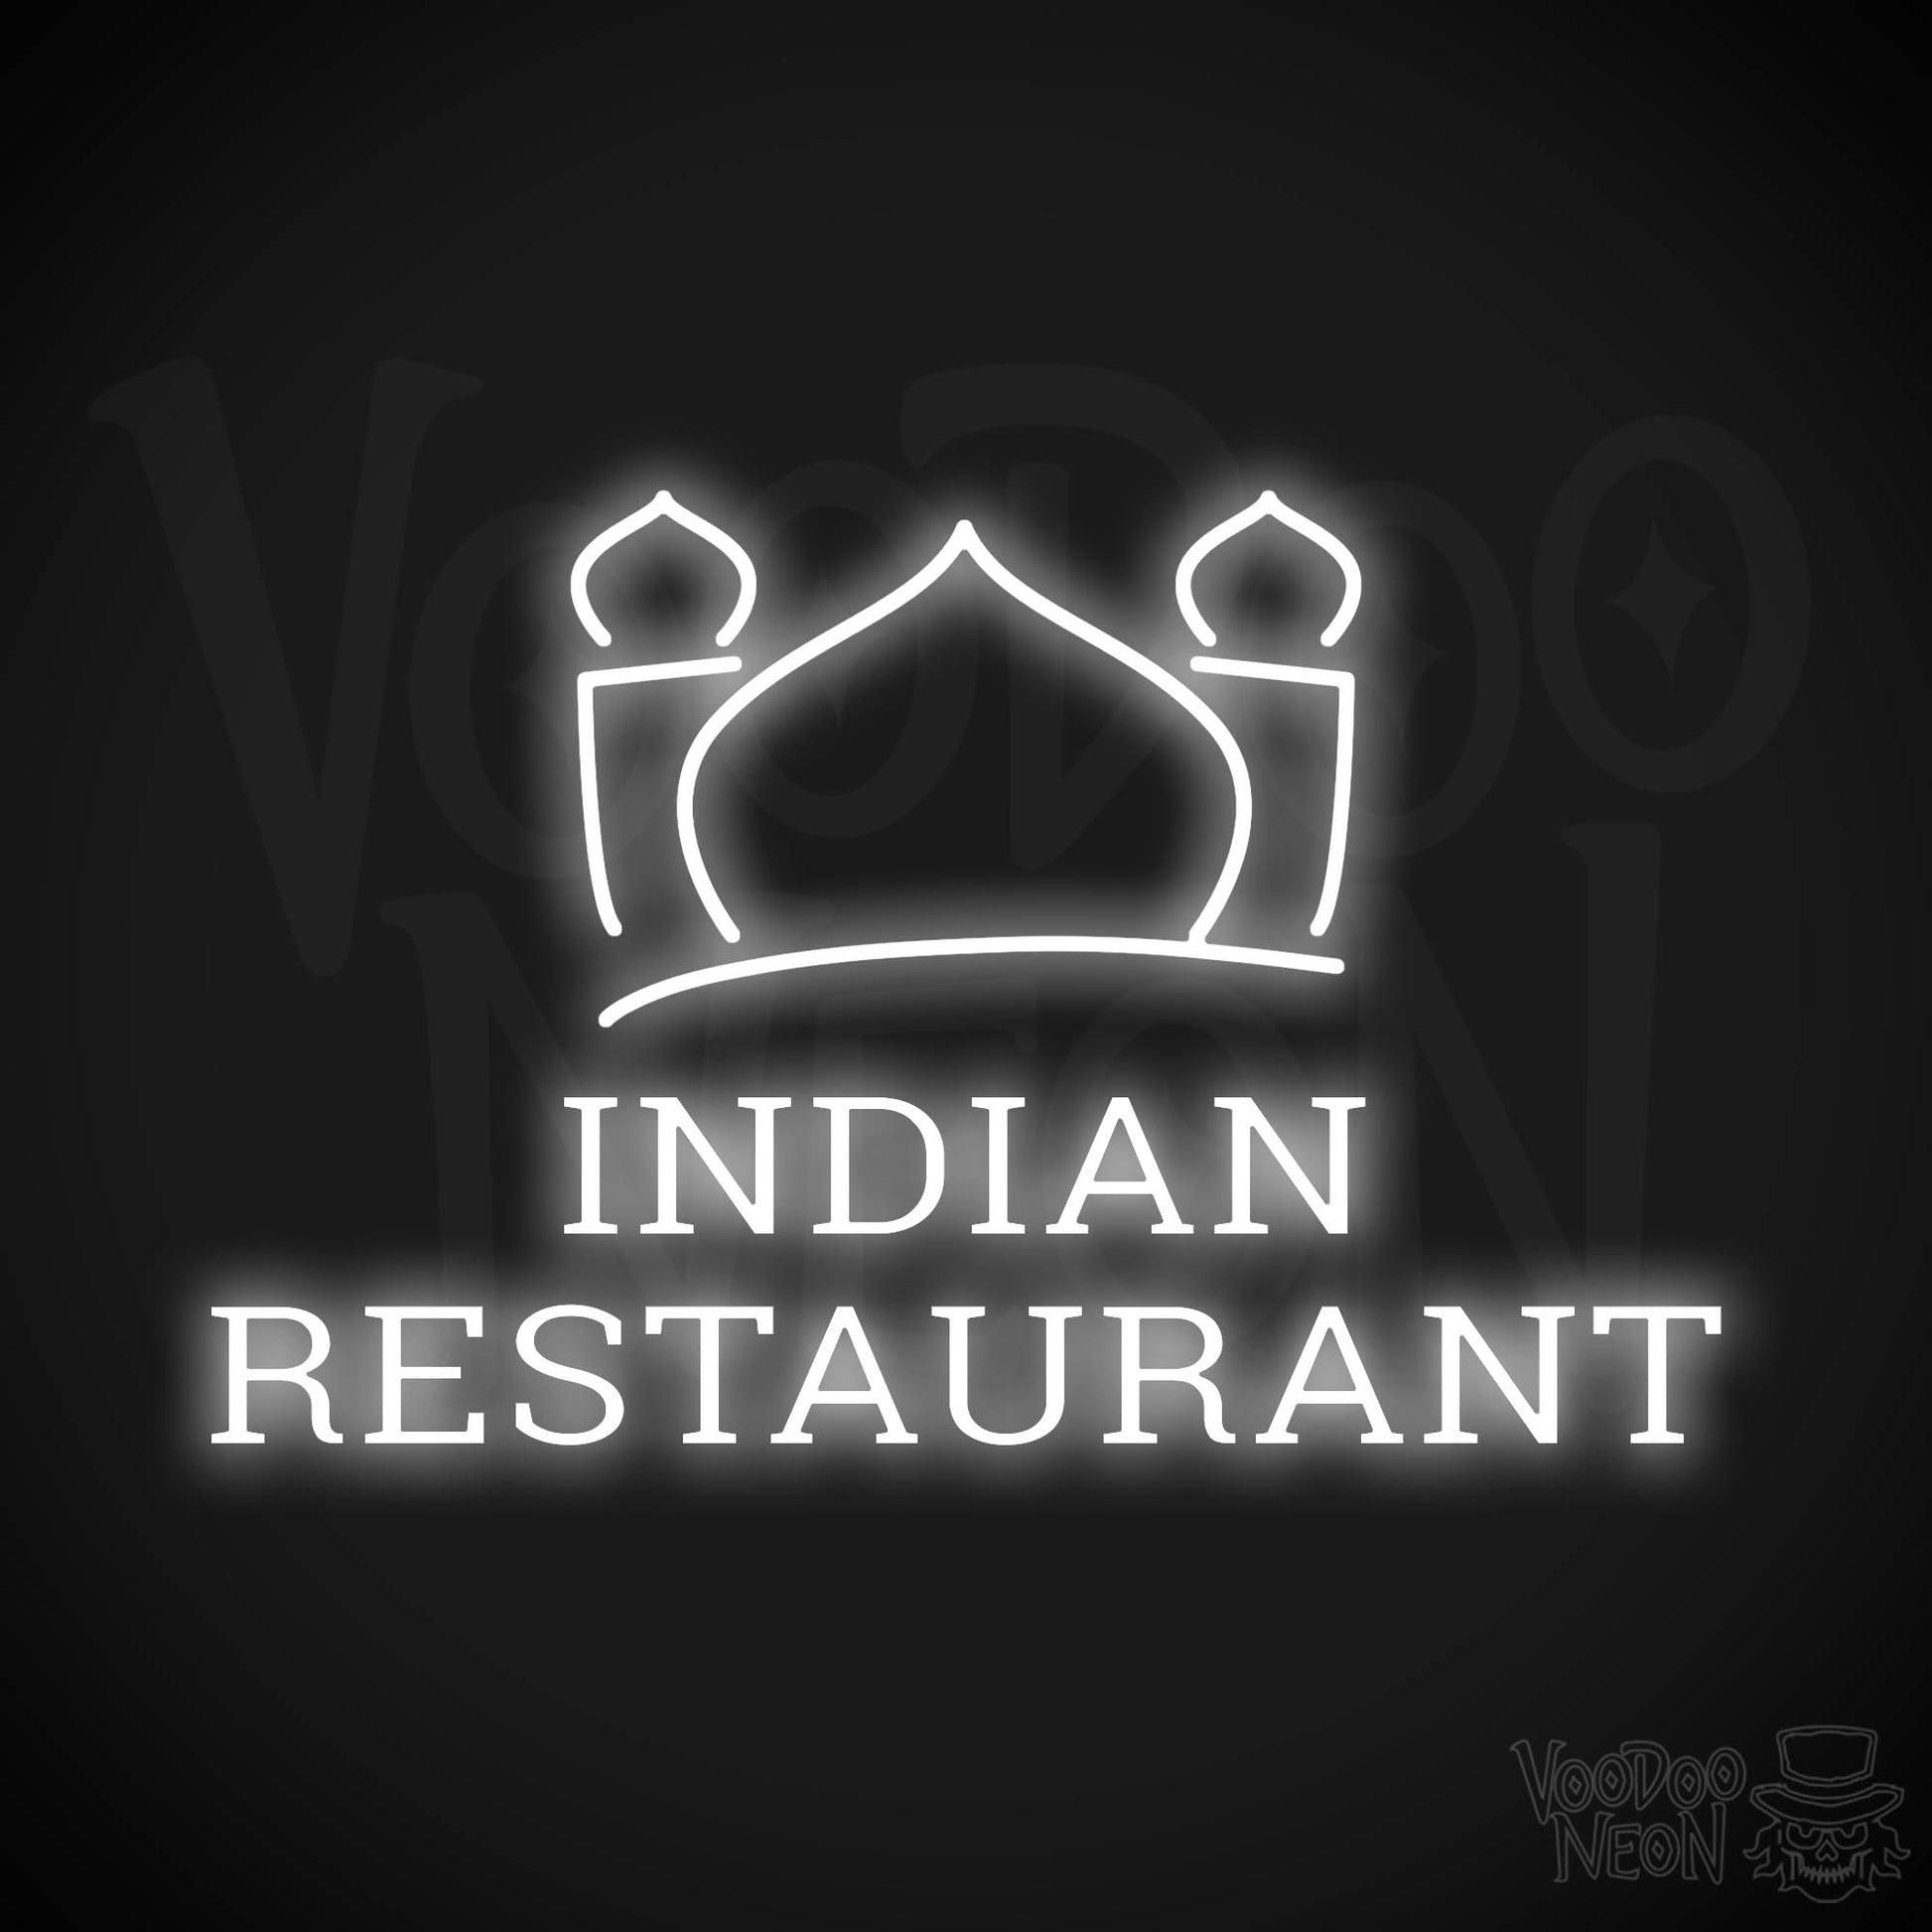 Indian Restaurant LED Neon - White